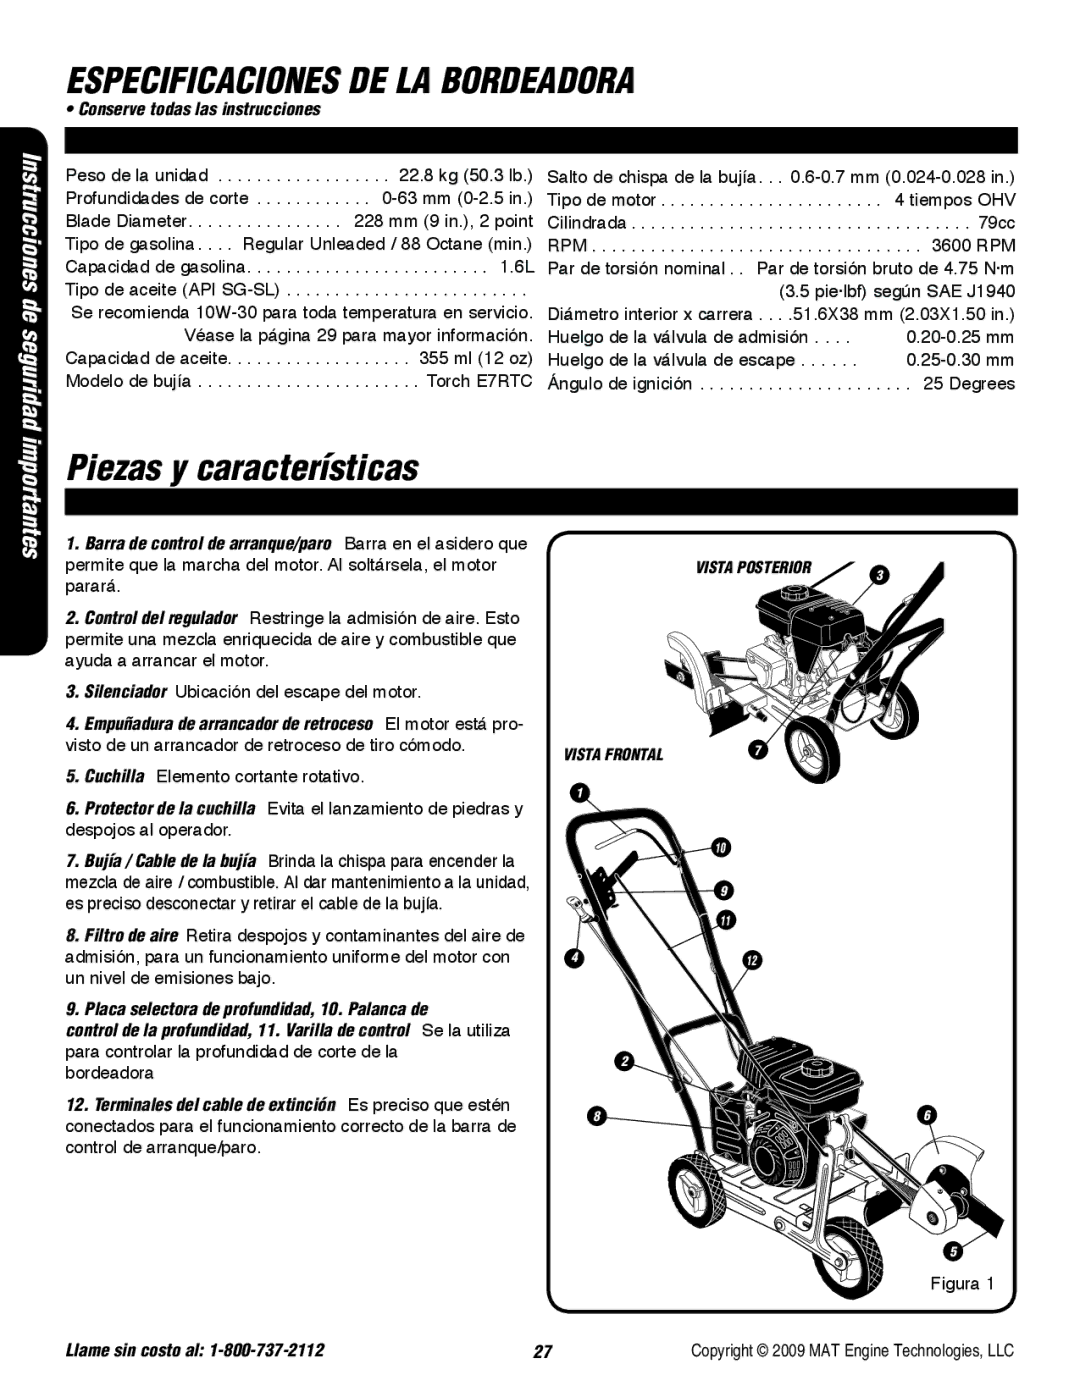 Powermate P-WLE-0799-F2N specifications Piezas y características, Visto de un arrancador de retroceso de tiro cómodo 